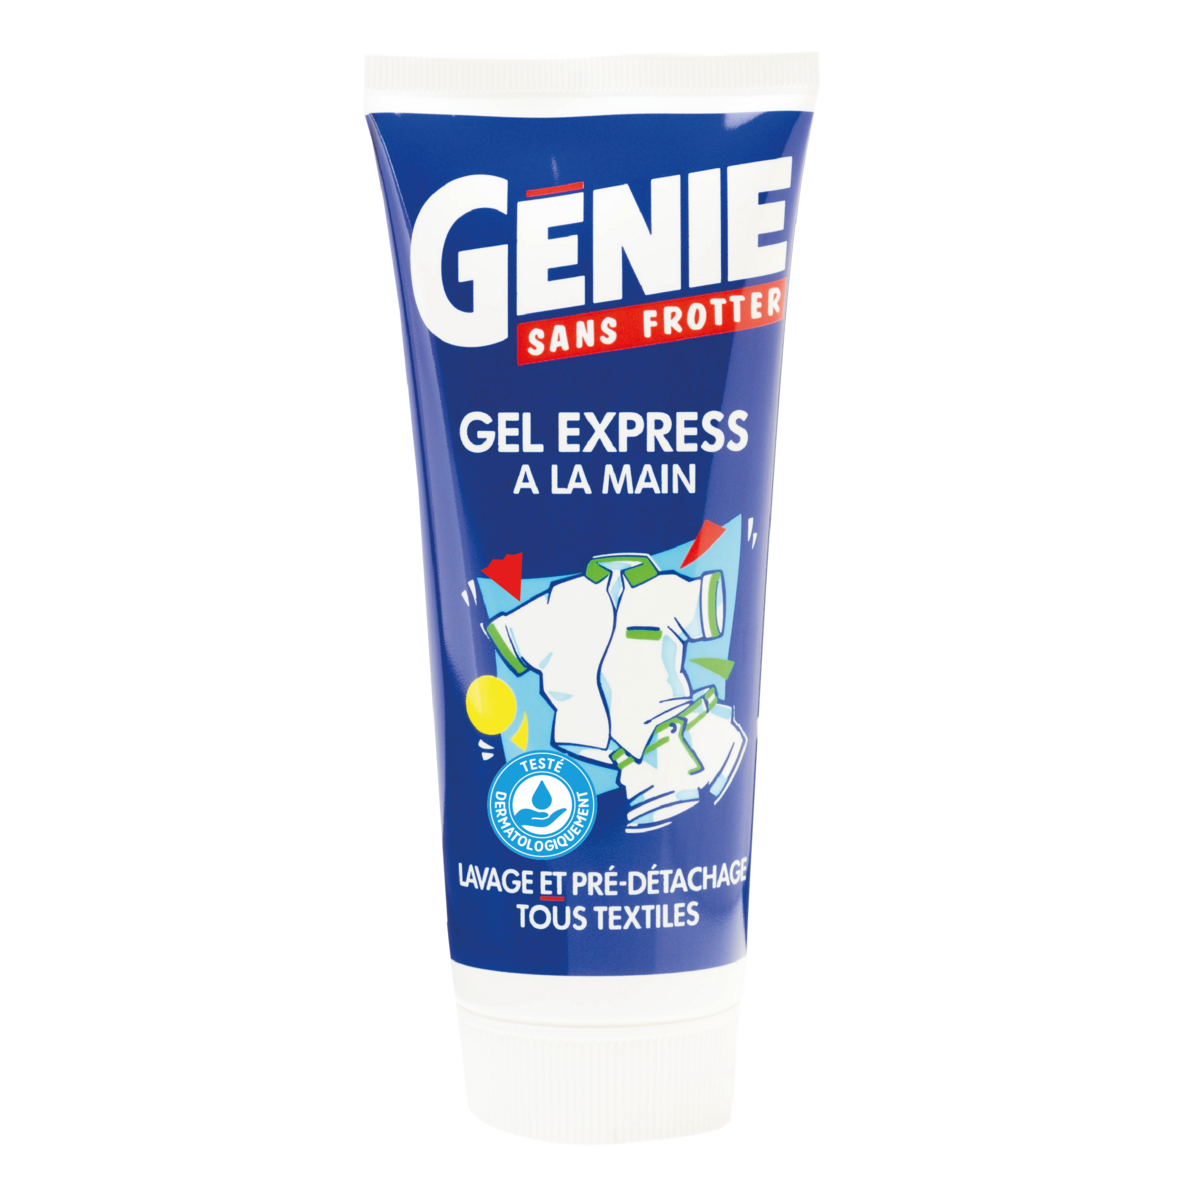 Genie gel express hand wash detergent 200ml